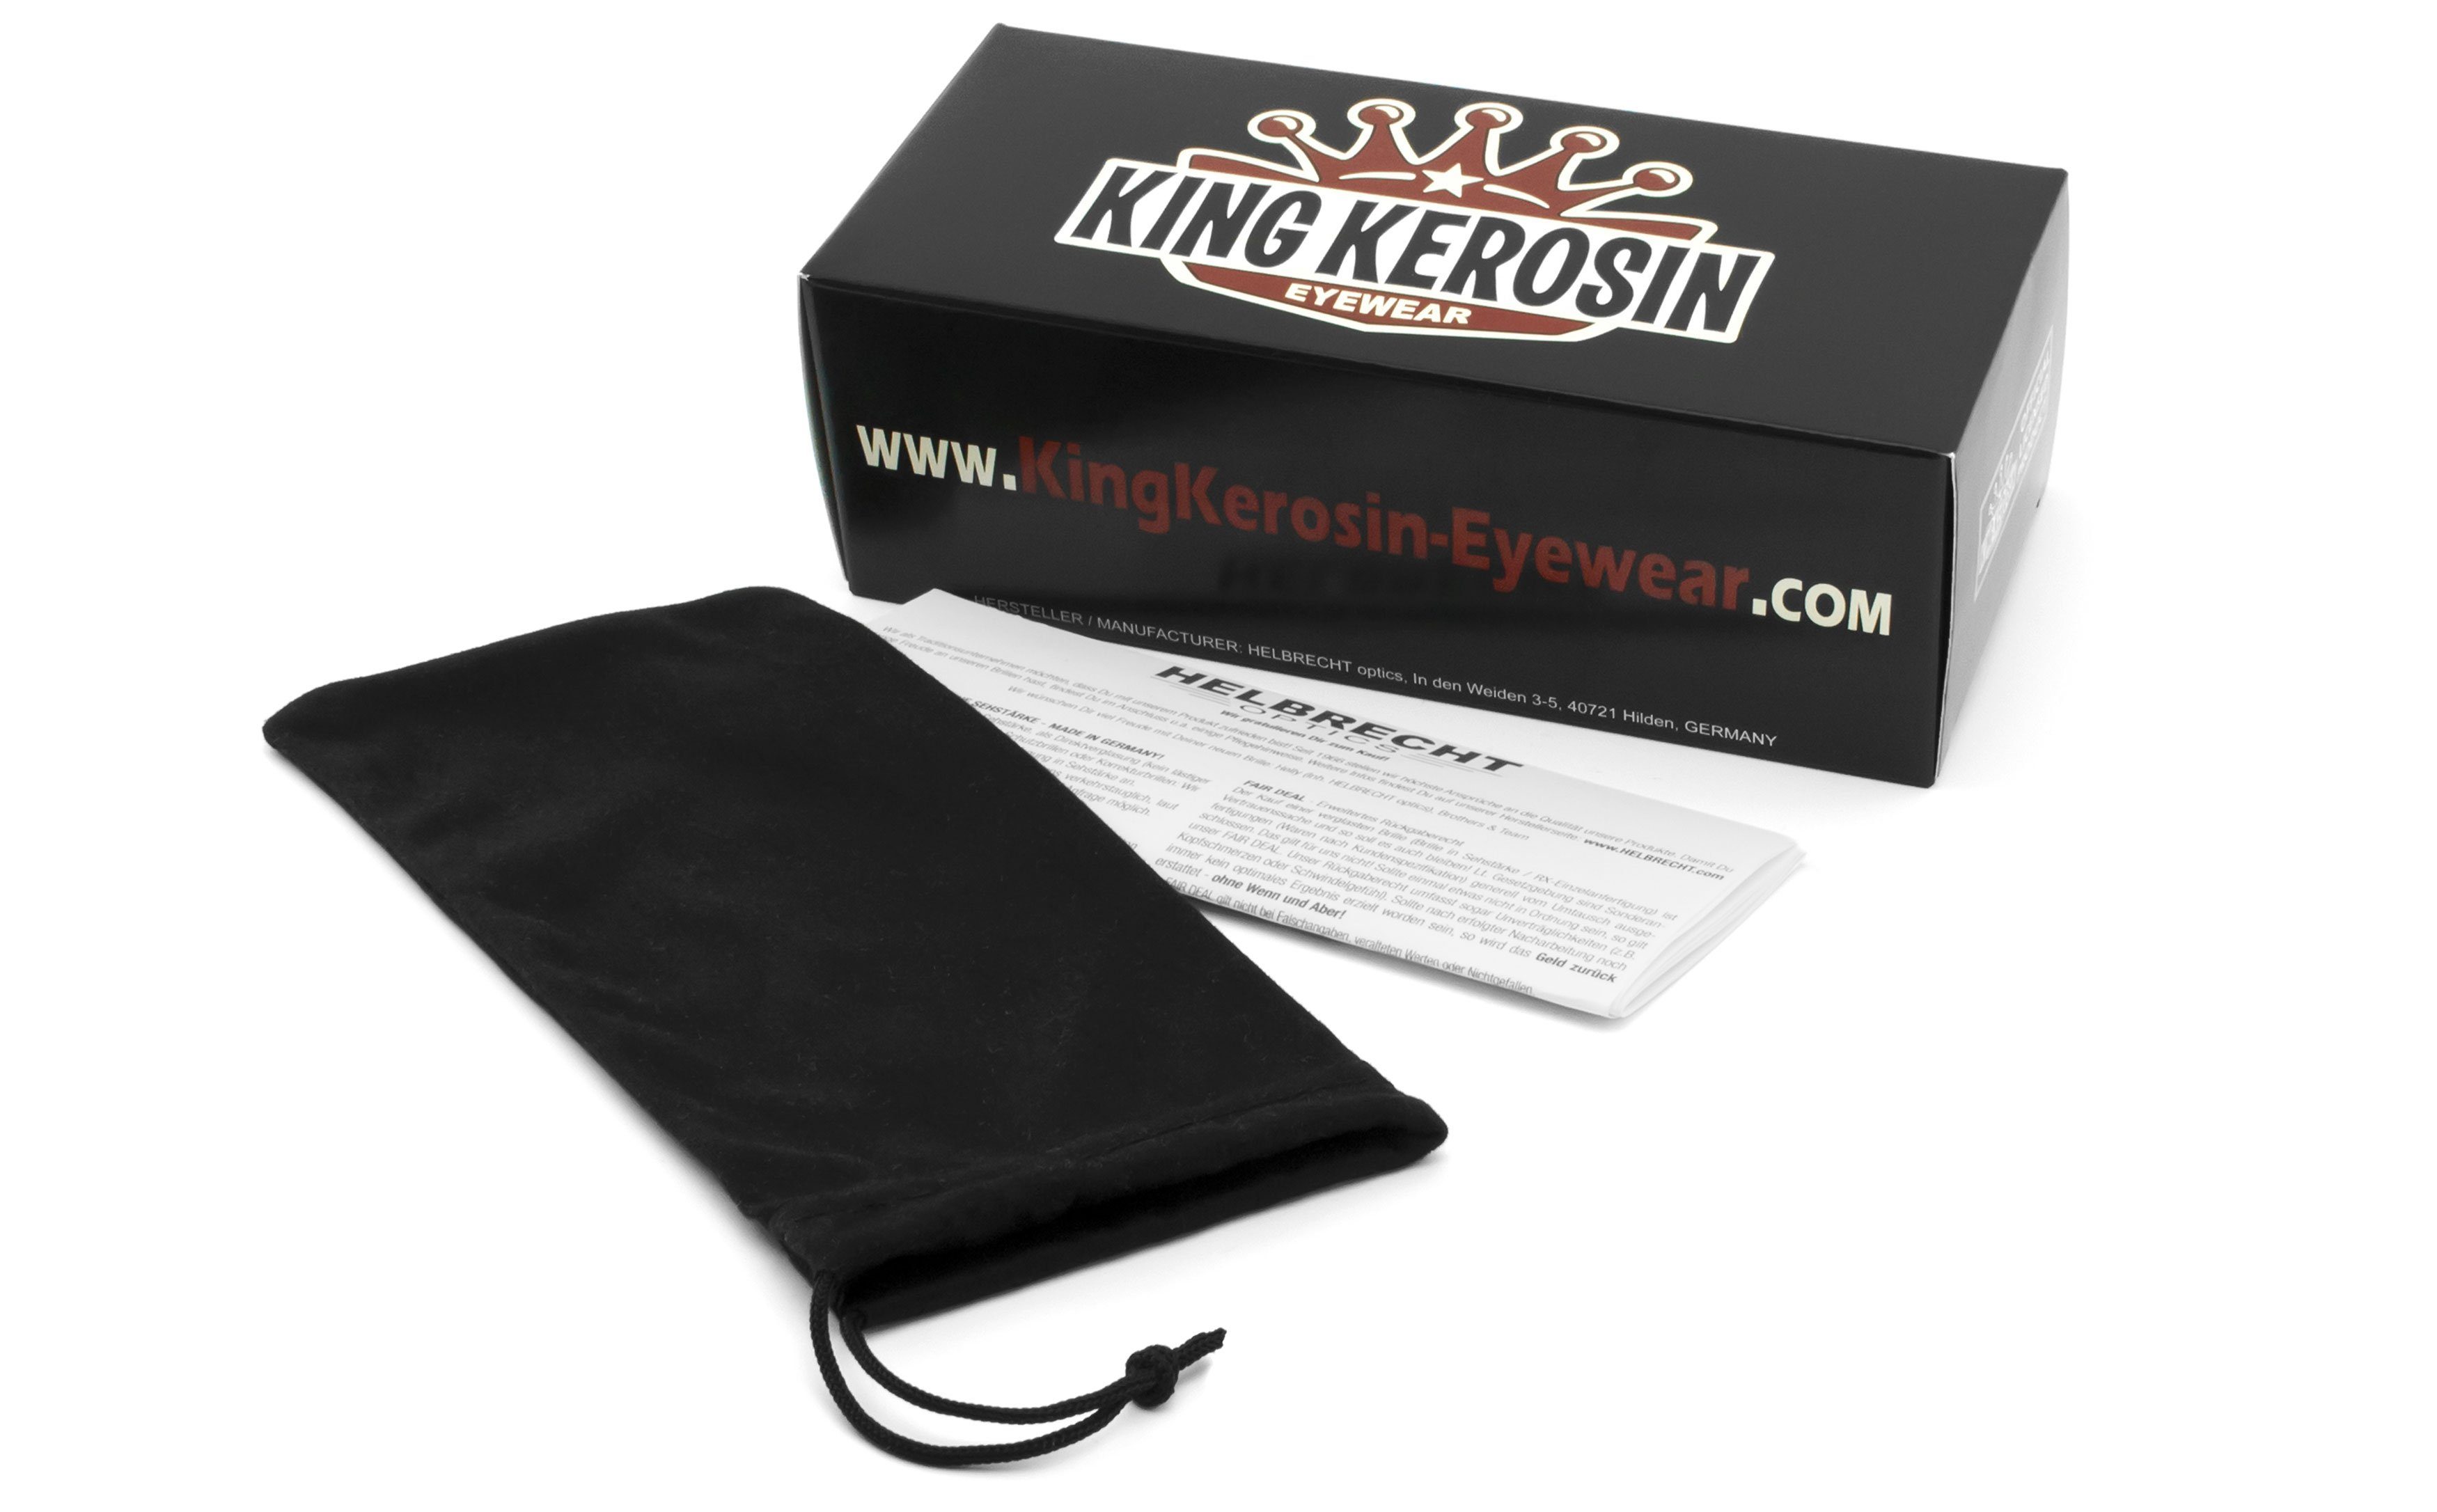 KingKerosin gepolstert, Kunststoff-Sicherheitsglas Motorradbrille Steinschlagbeständig durch KK140